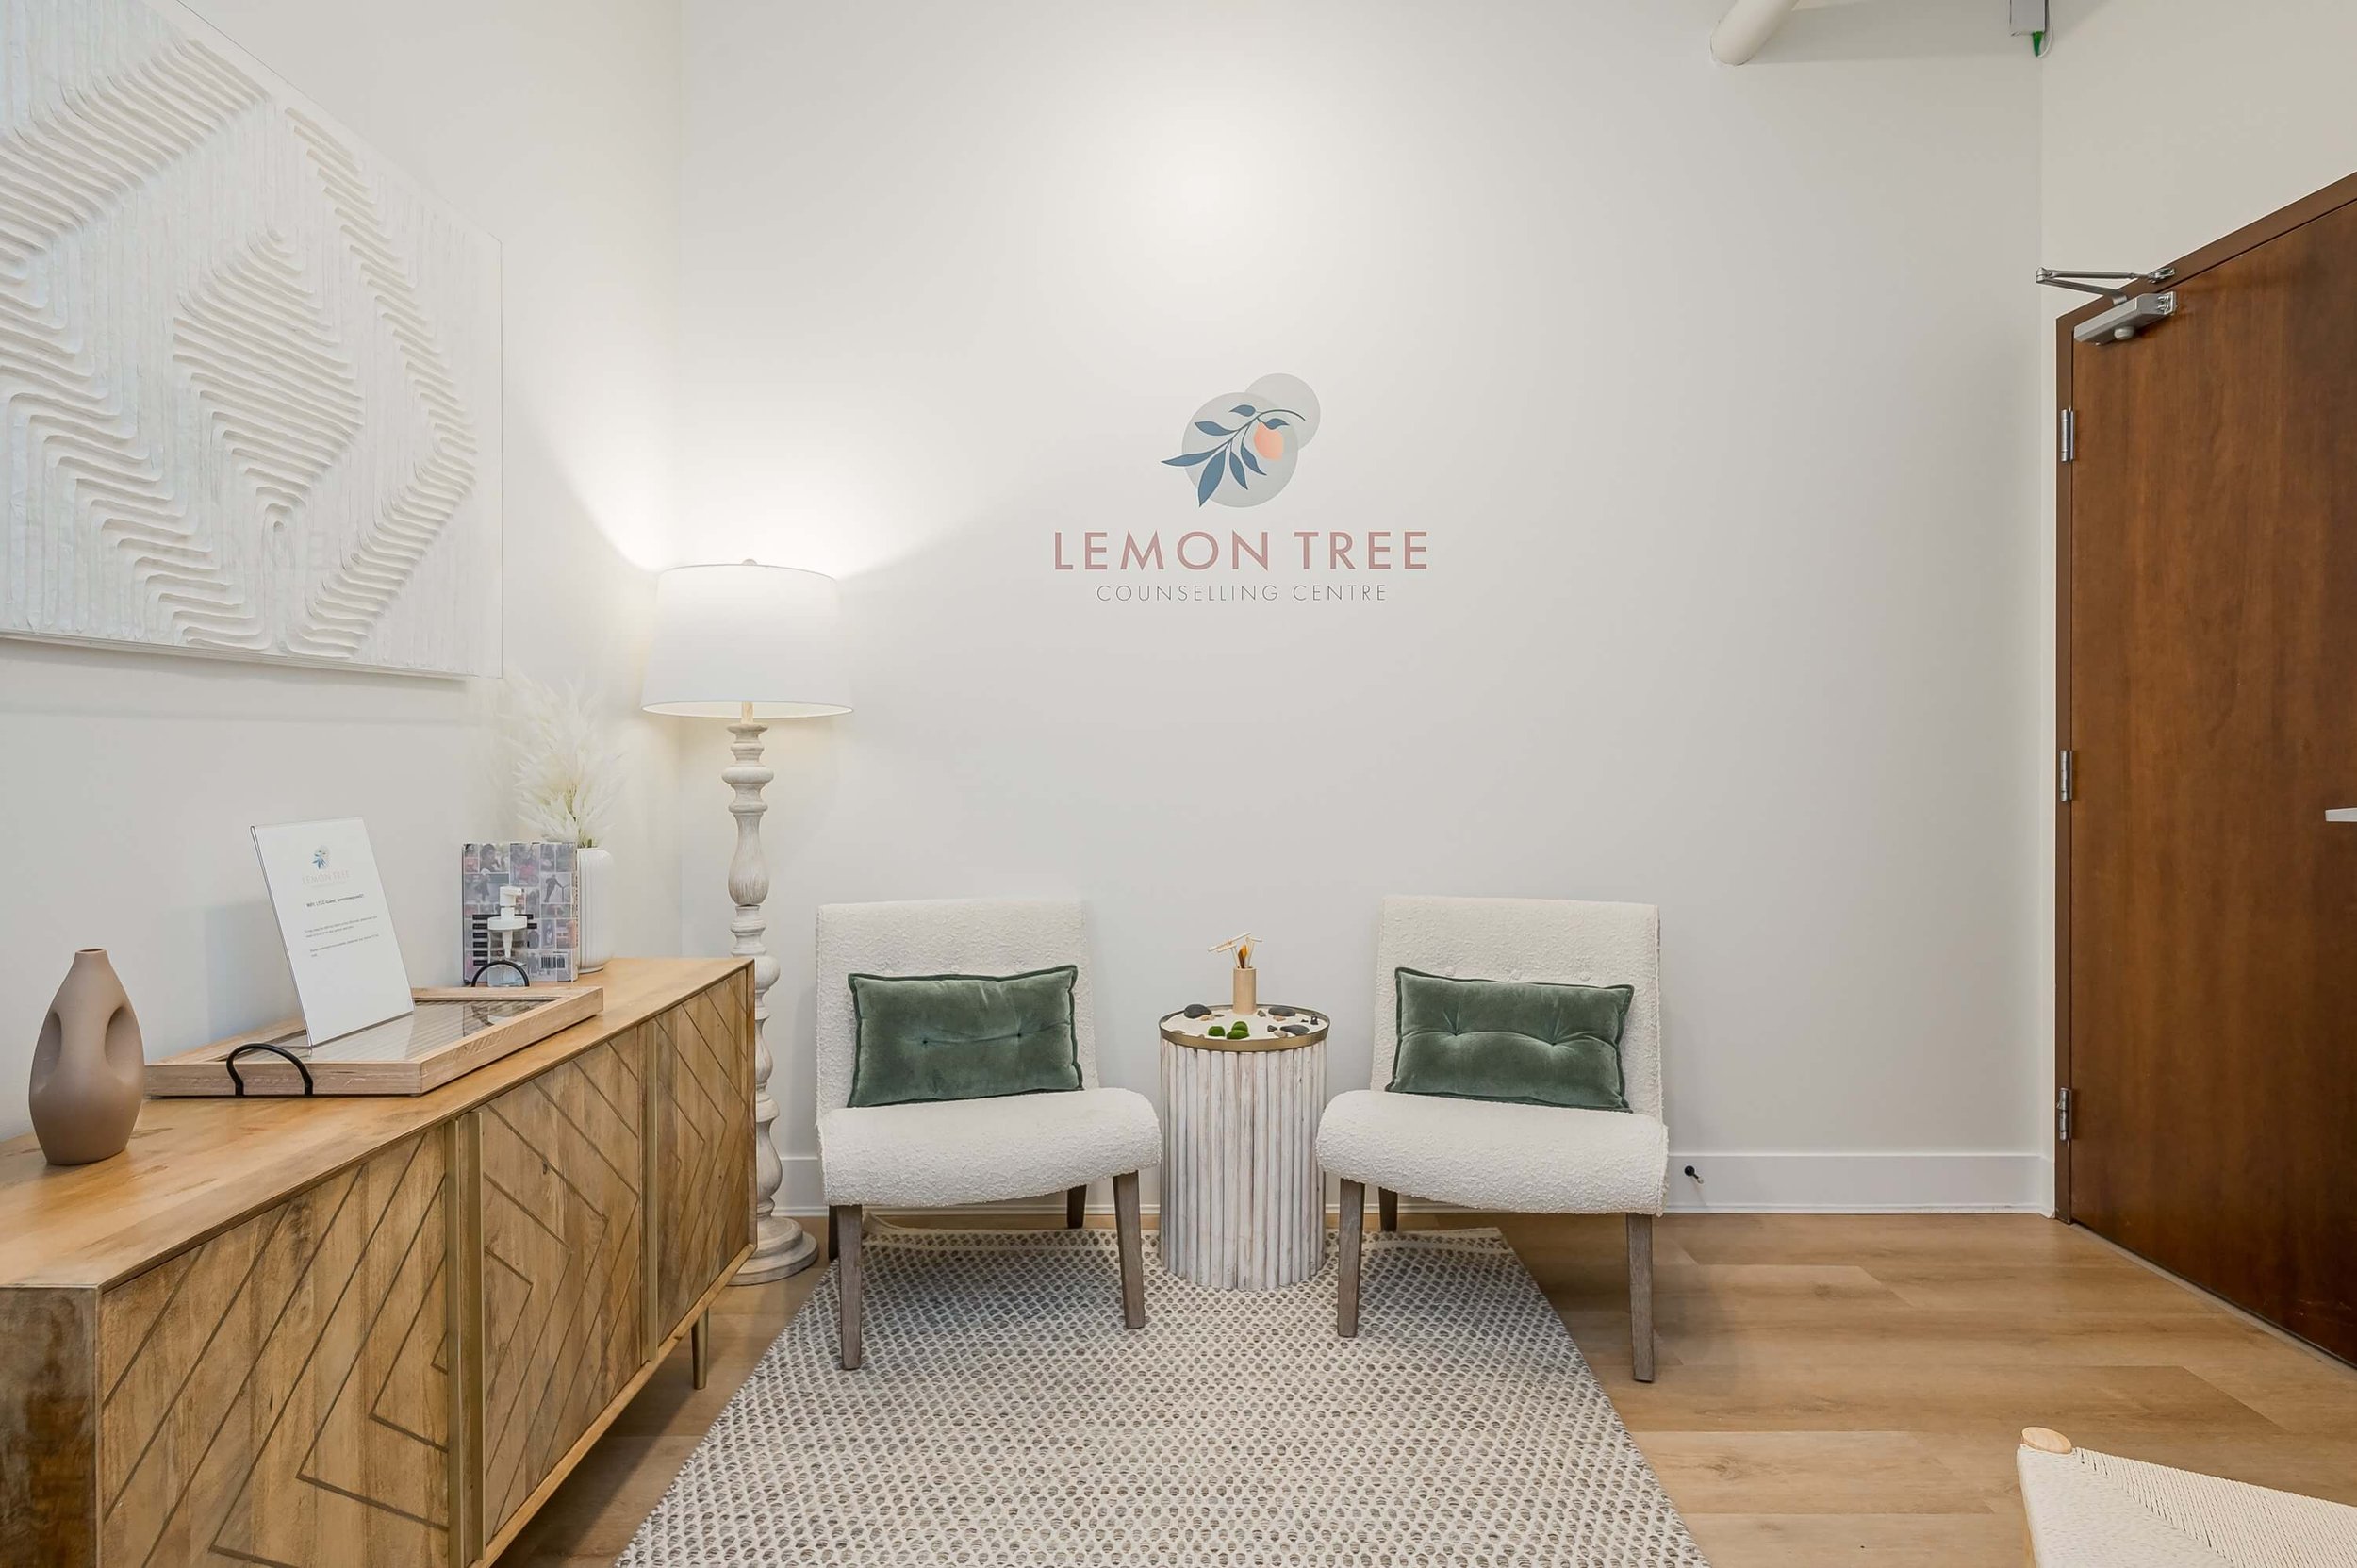 Lemon Tree Counselling Centre - Waiting Room 2.jpg